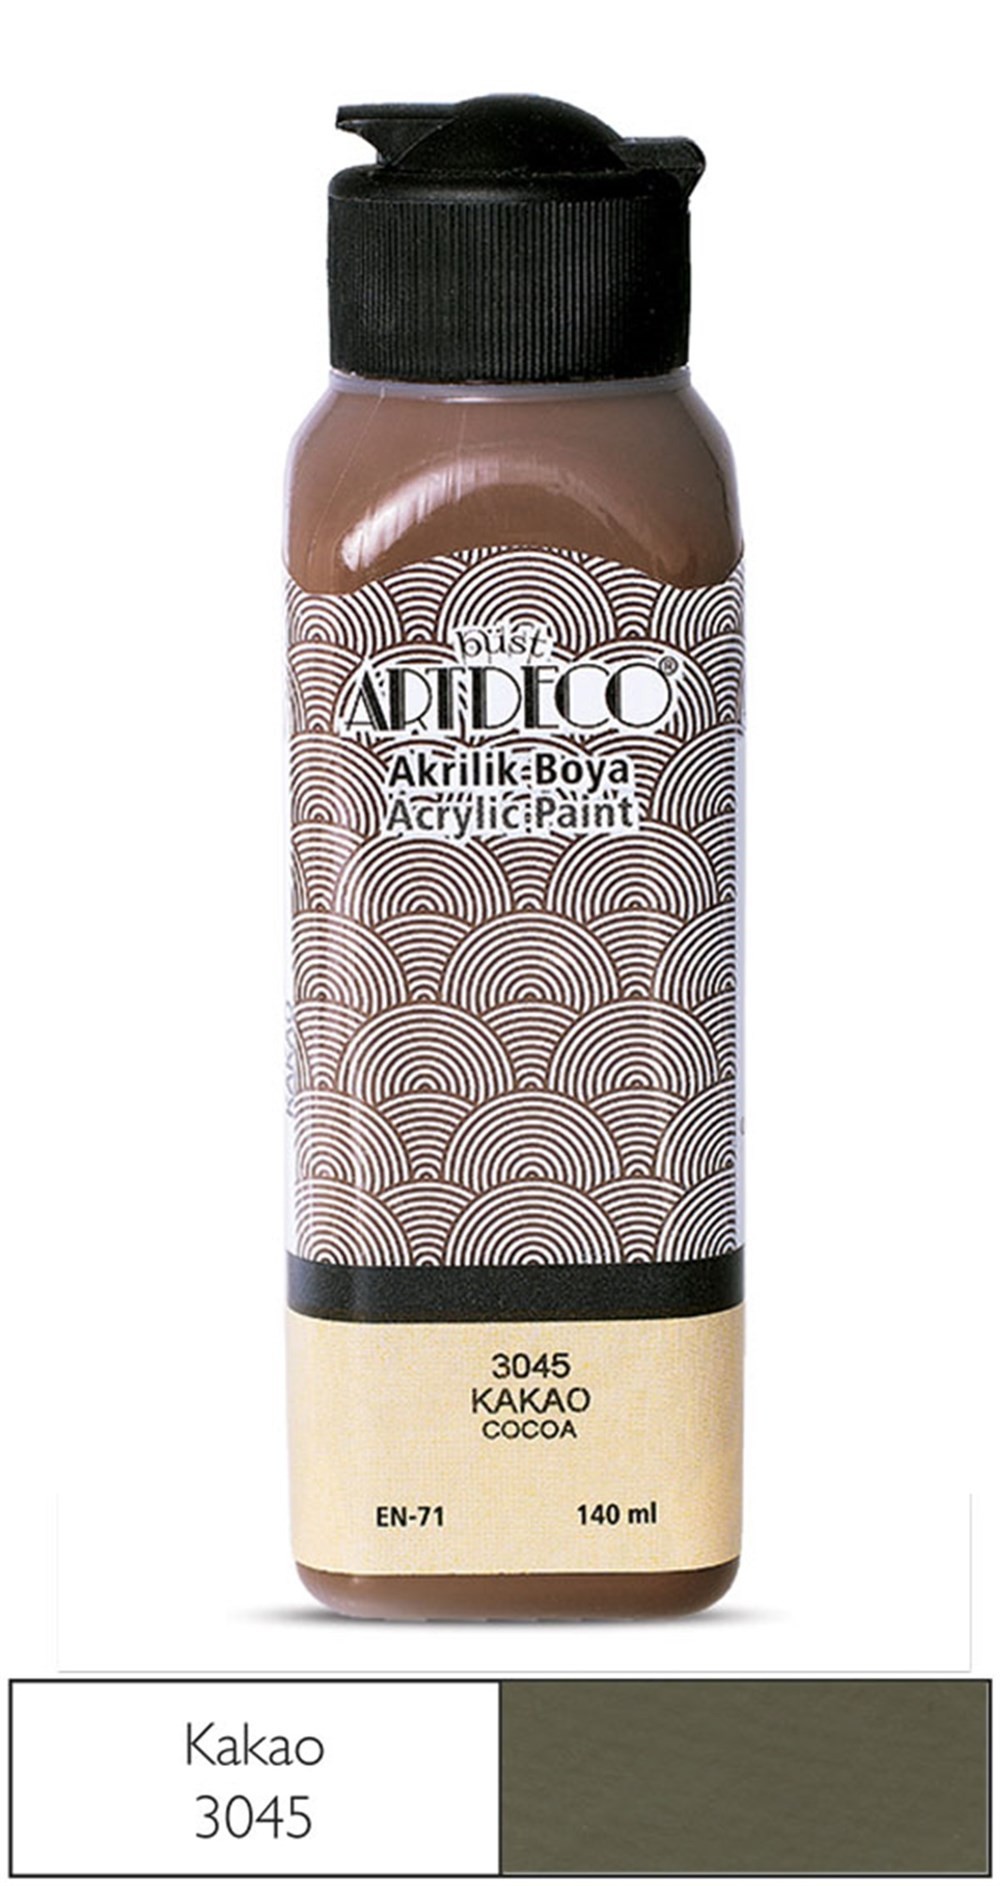 Artdeco Akrilik Boya 140 ml 3045 Kakao